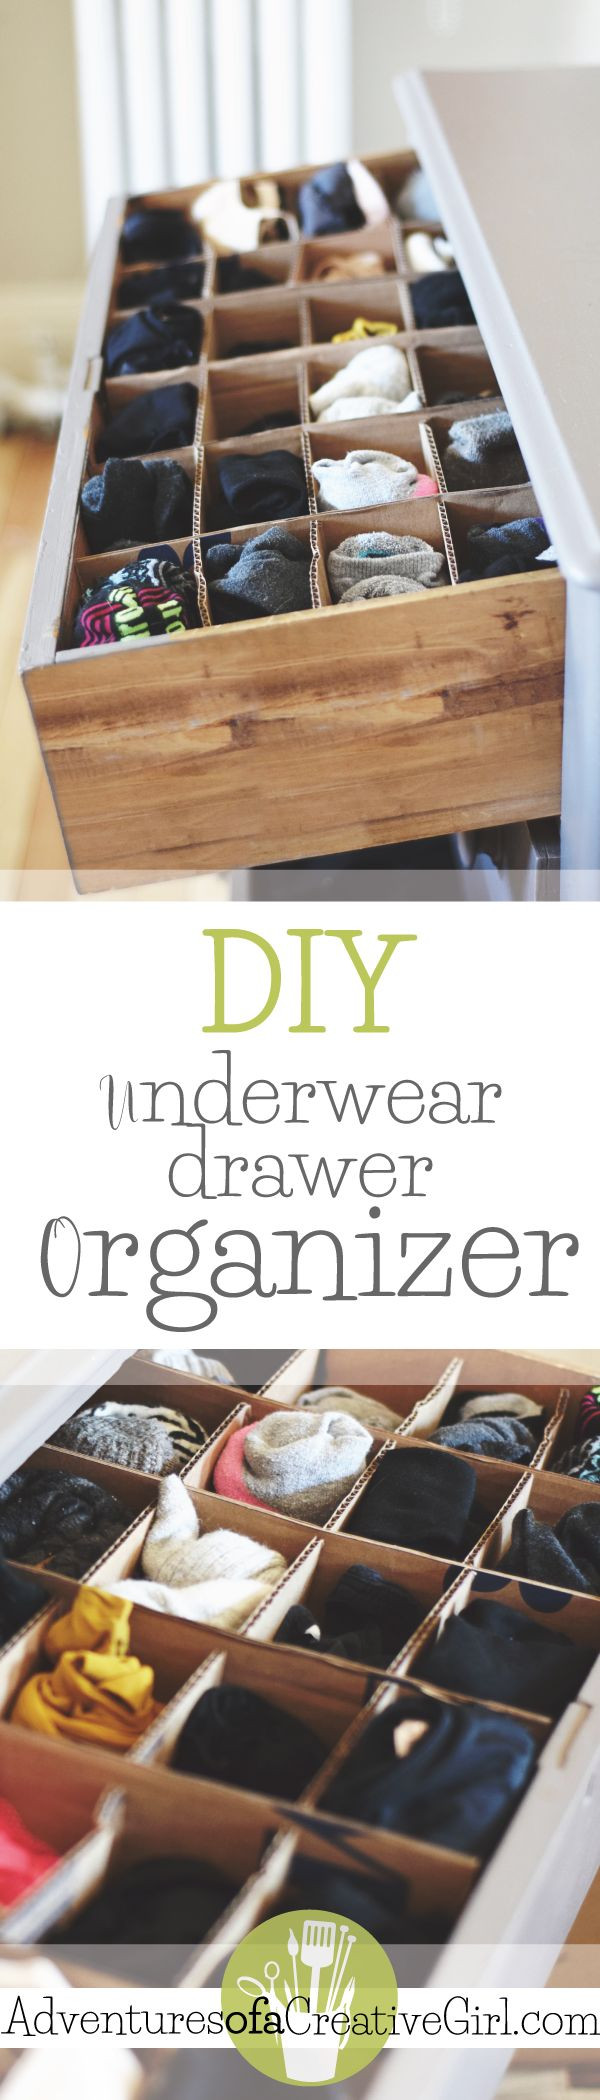 Best ideas about Underwear Drawer Organizer DIY
. Save or Pin Underwear Drawer Organizer DIY Now.